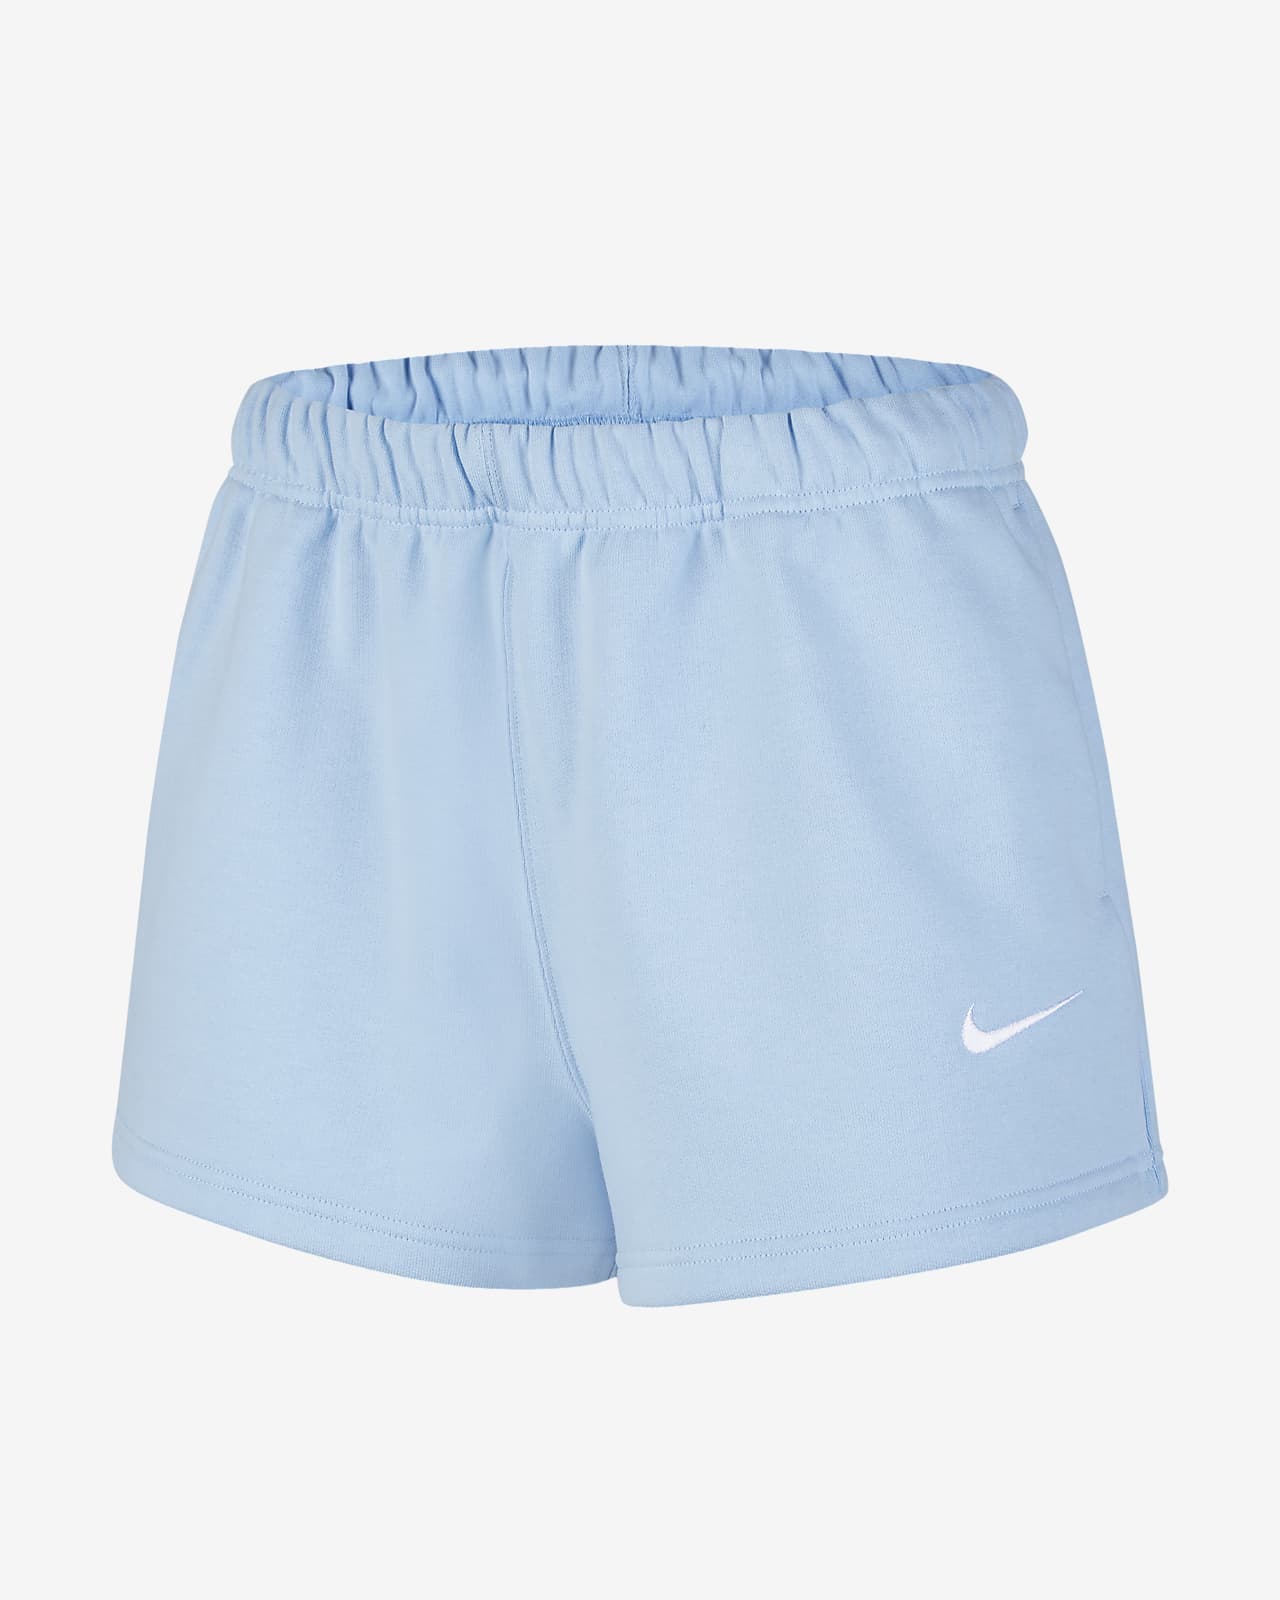 NikeLab 女子针织短裤